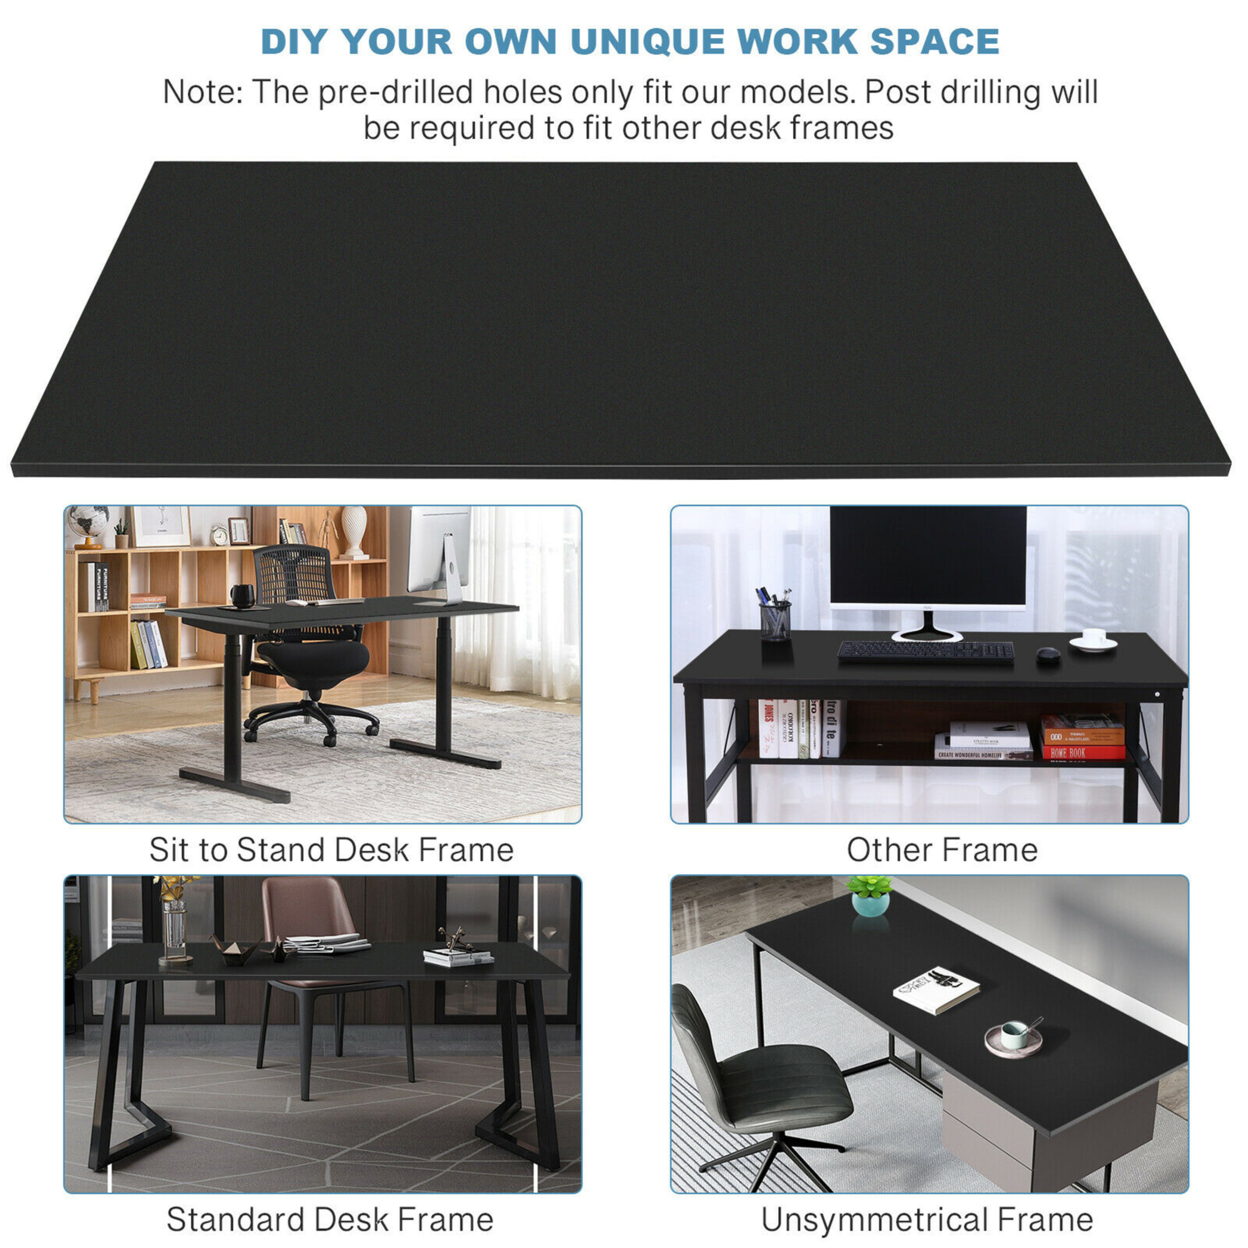 Gymax 48'' Solid Universal Desktop For Standard & Sit To Stand Desk Frame - Black